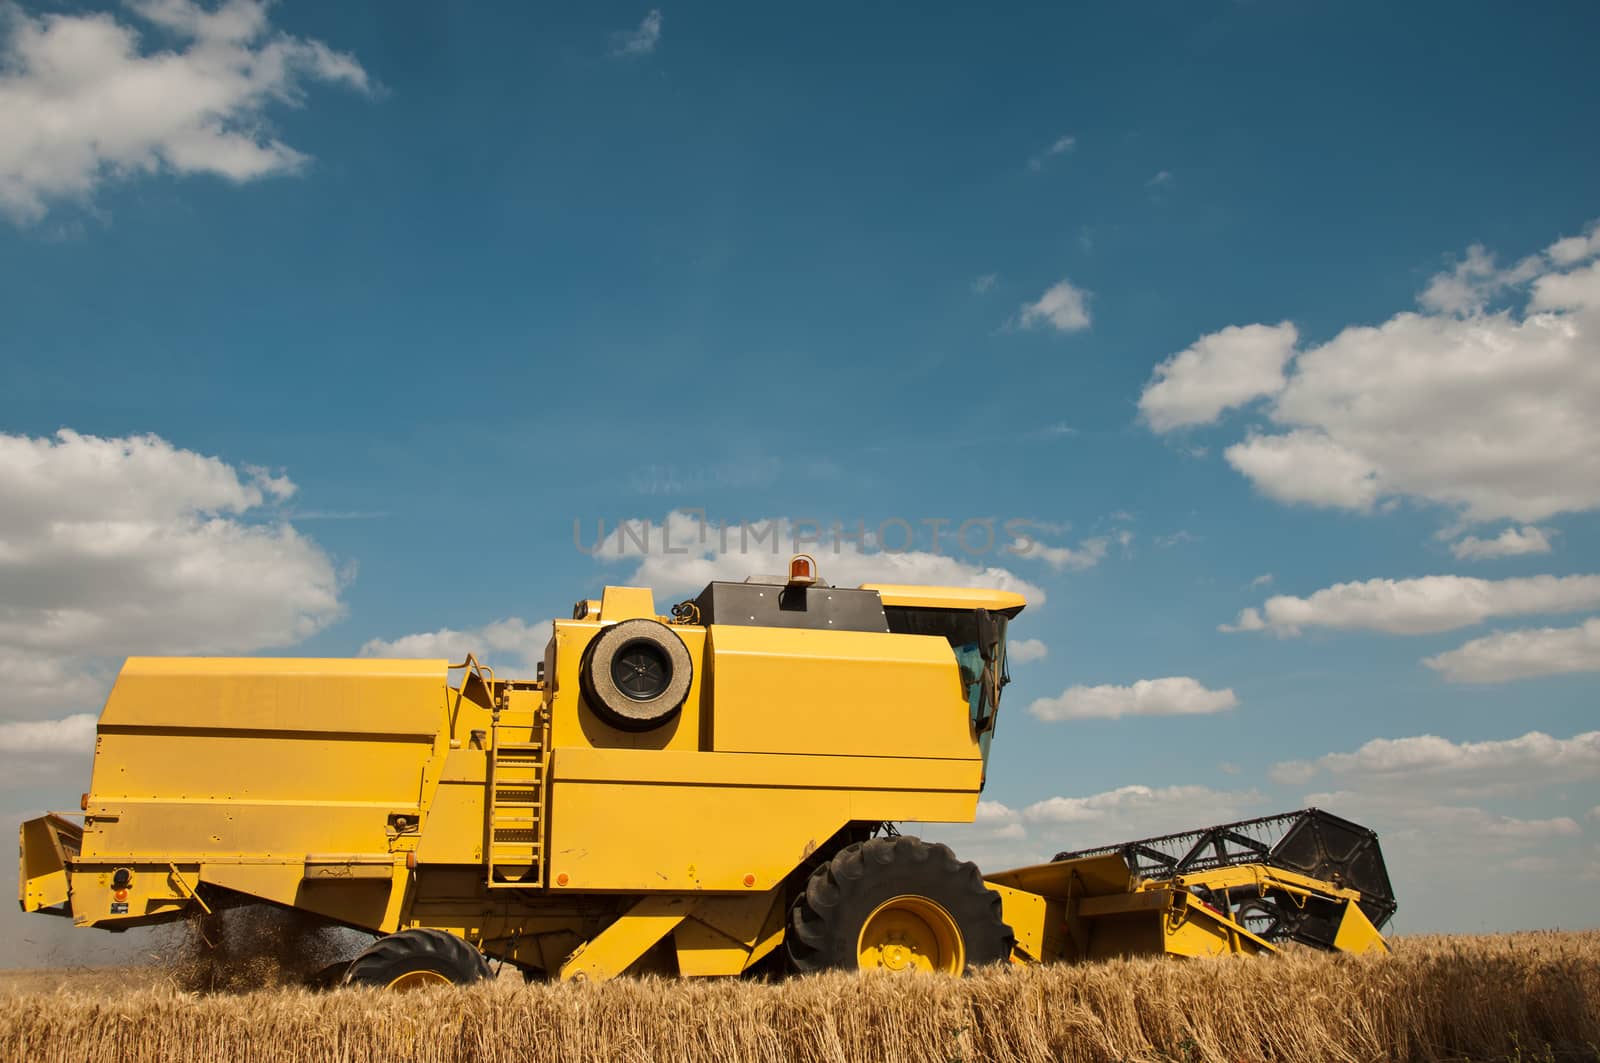 harvest in wheat field by NeydtStock